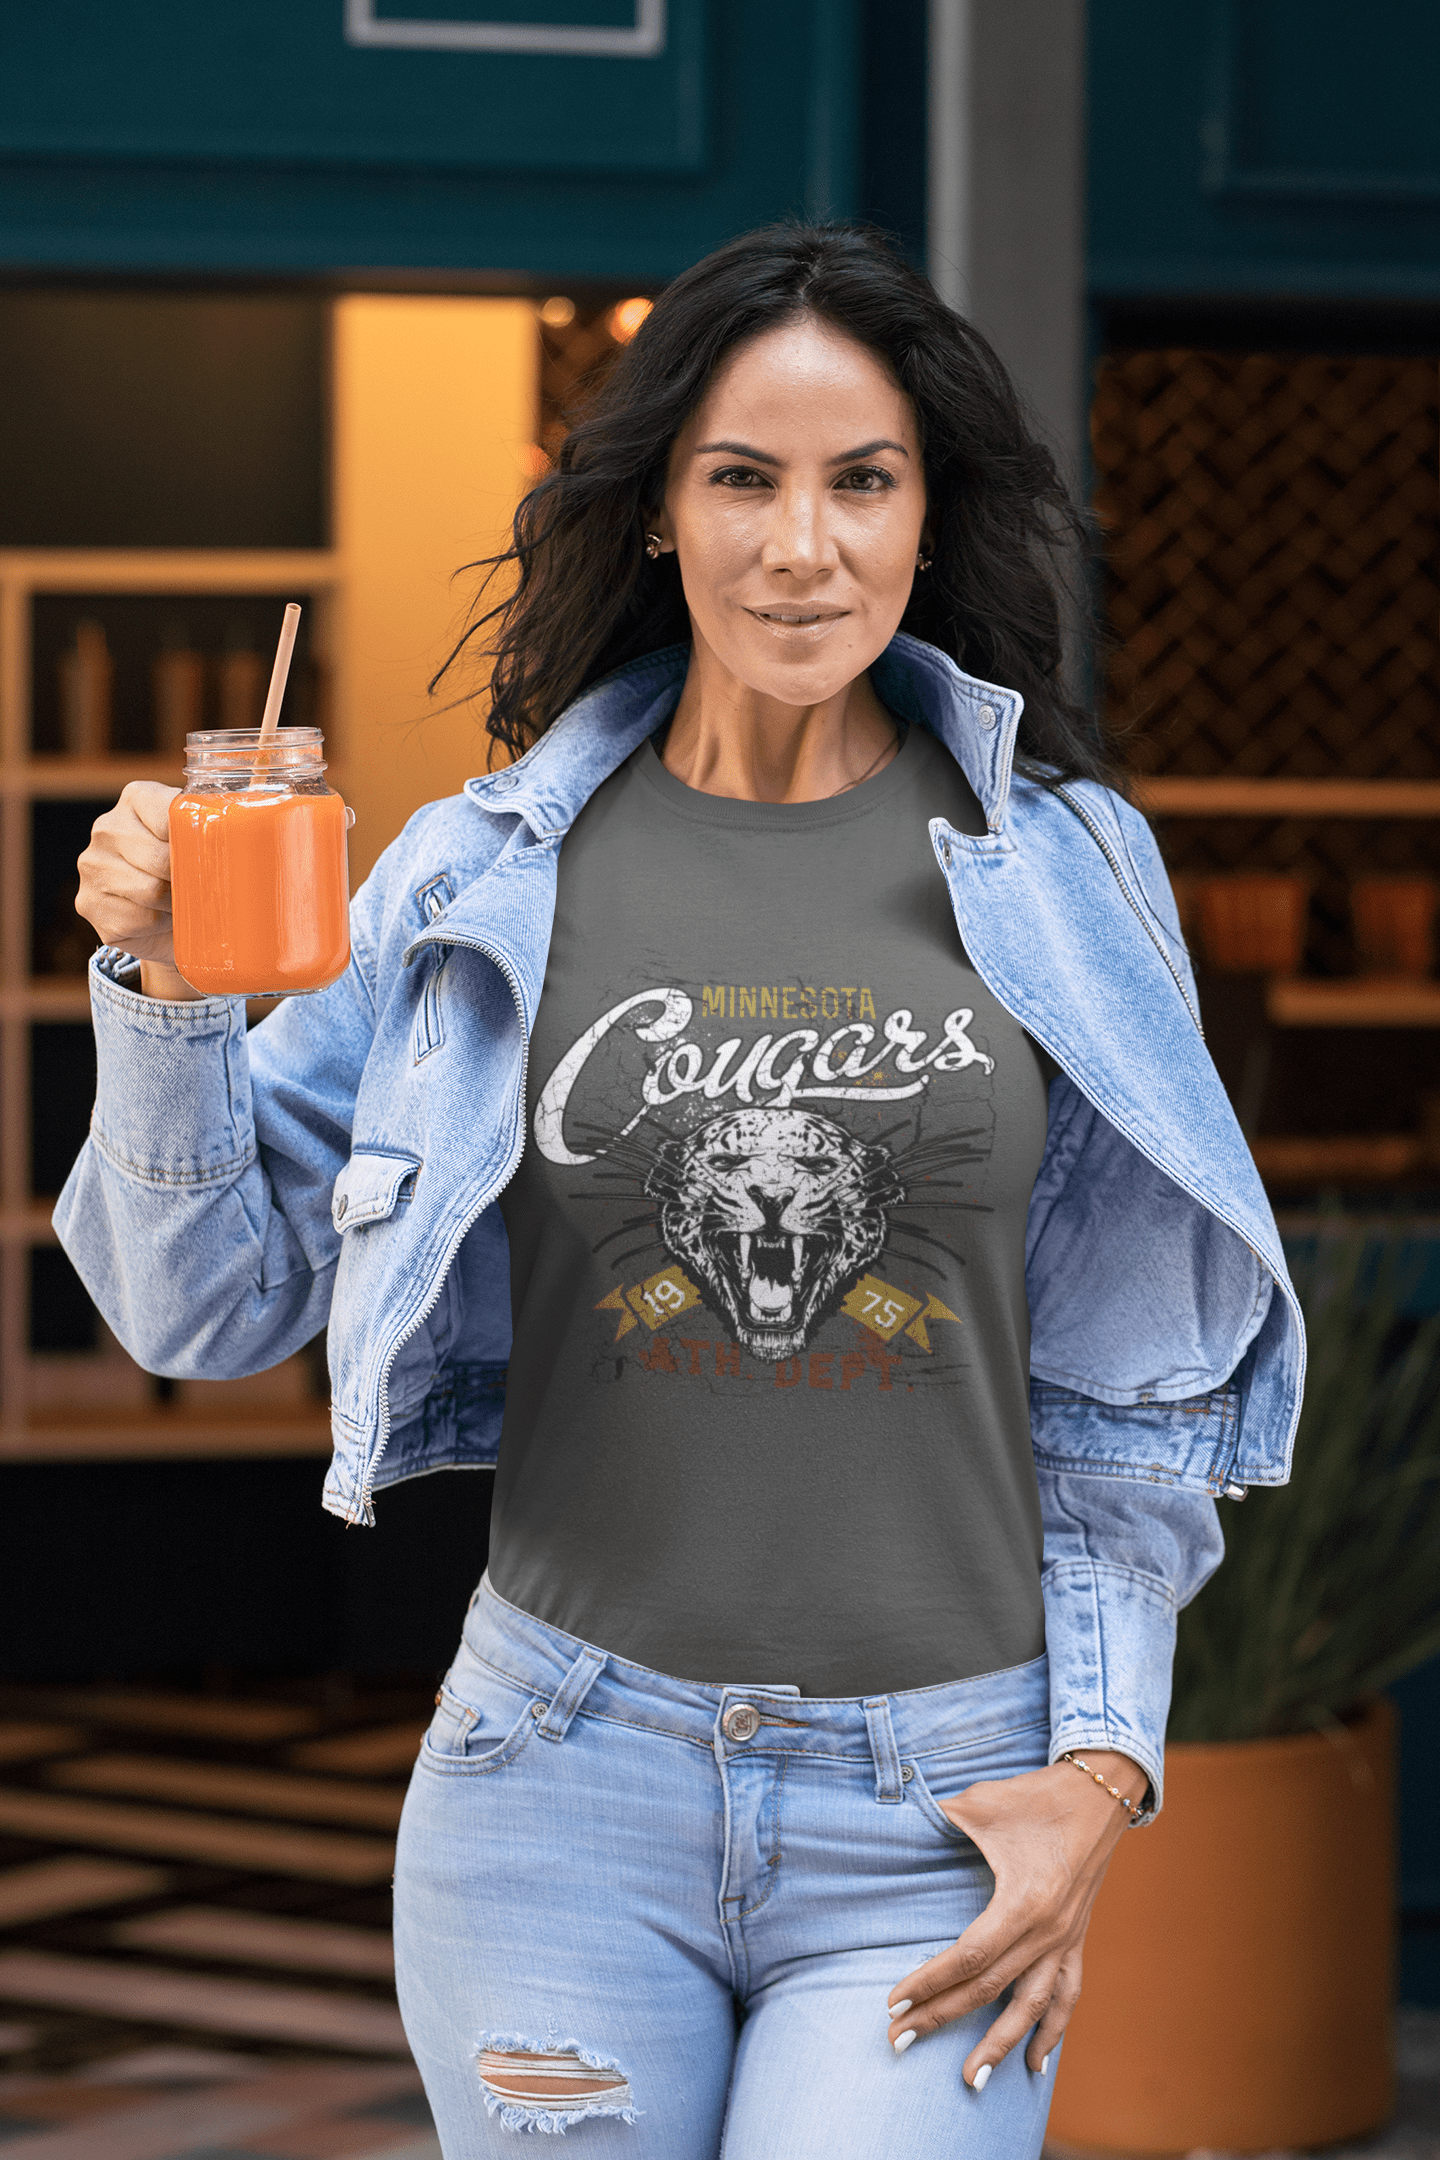 Minnesota Cougars Tee